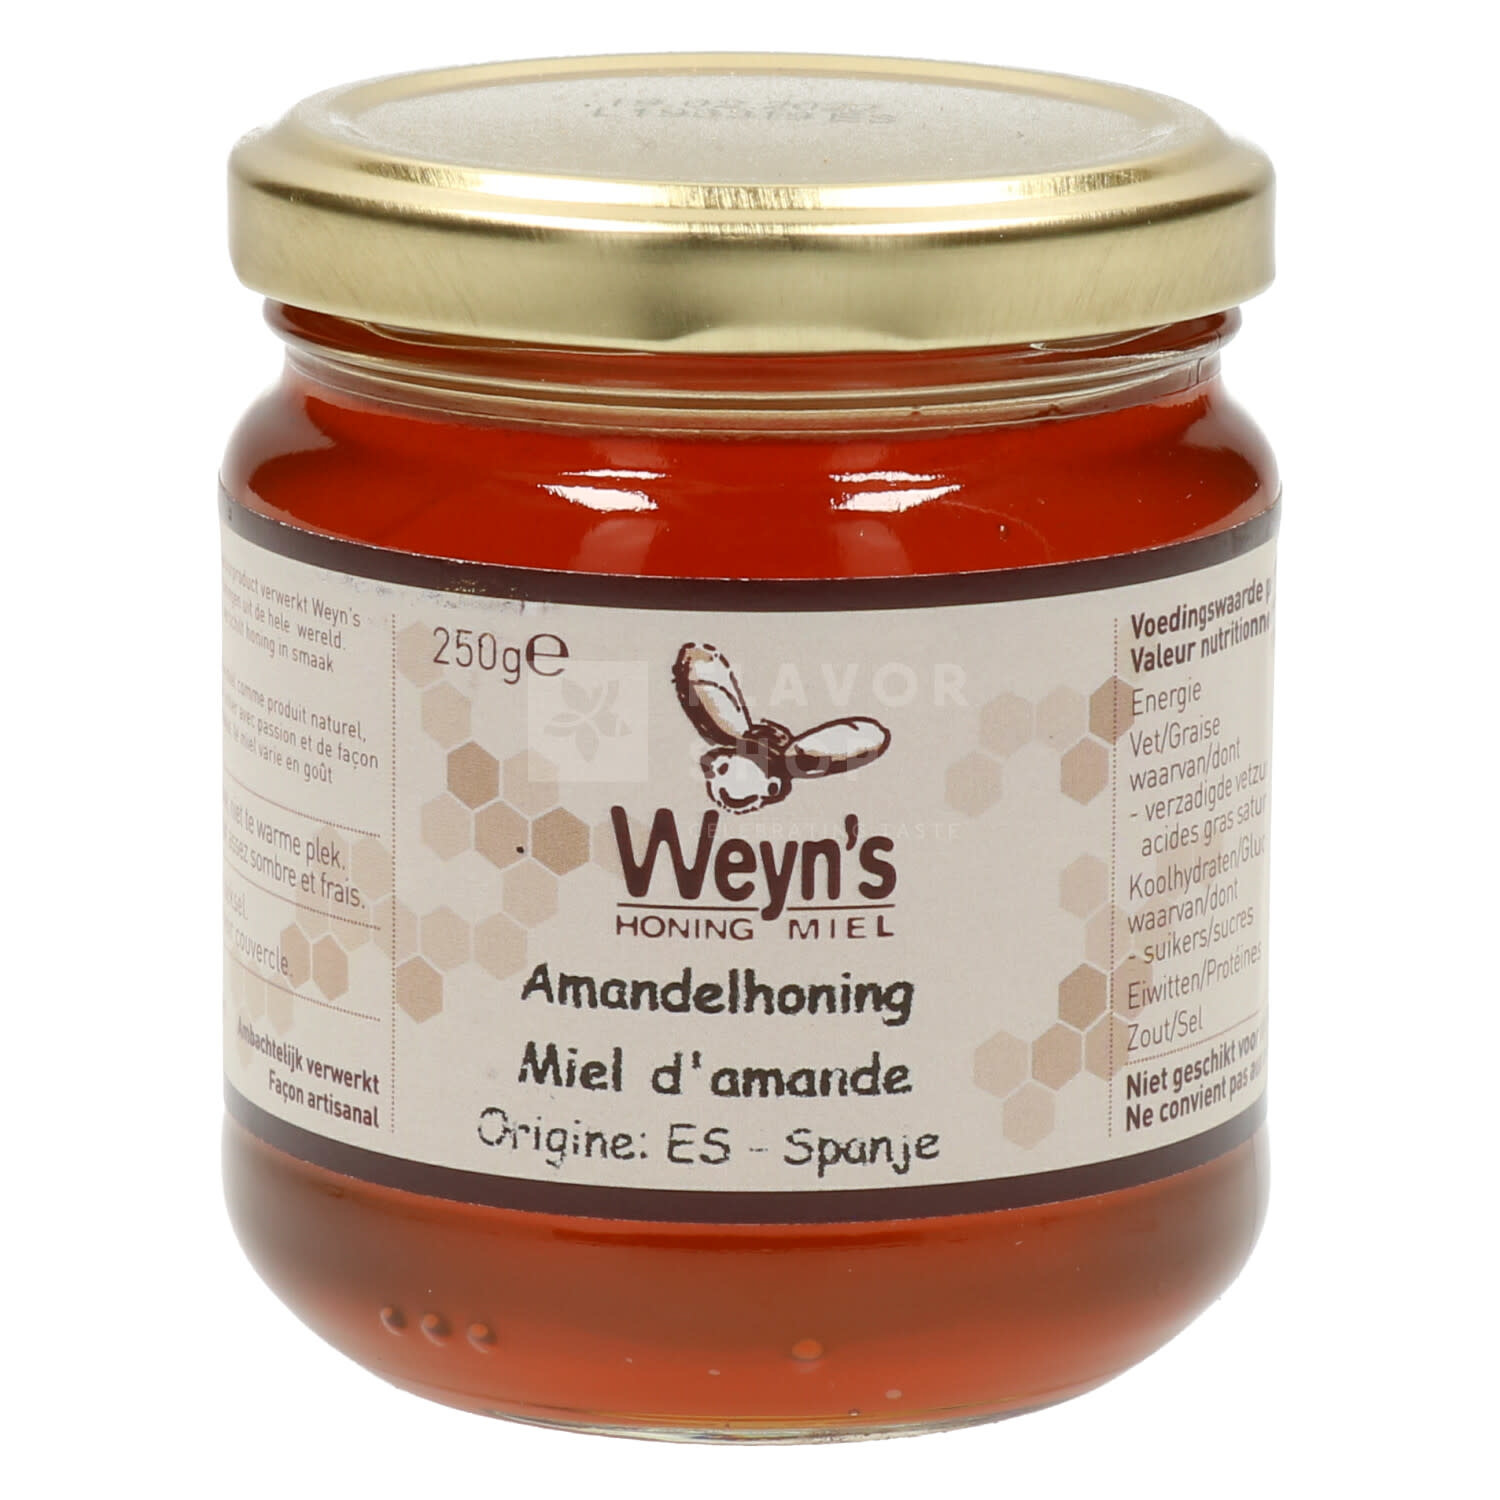 Grommen Tenen etiket Amandel Honing 250g Weyn's - Online kopen bij Flavor Shop - Celebrating  TASTE